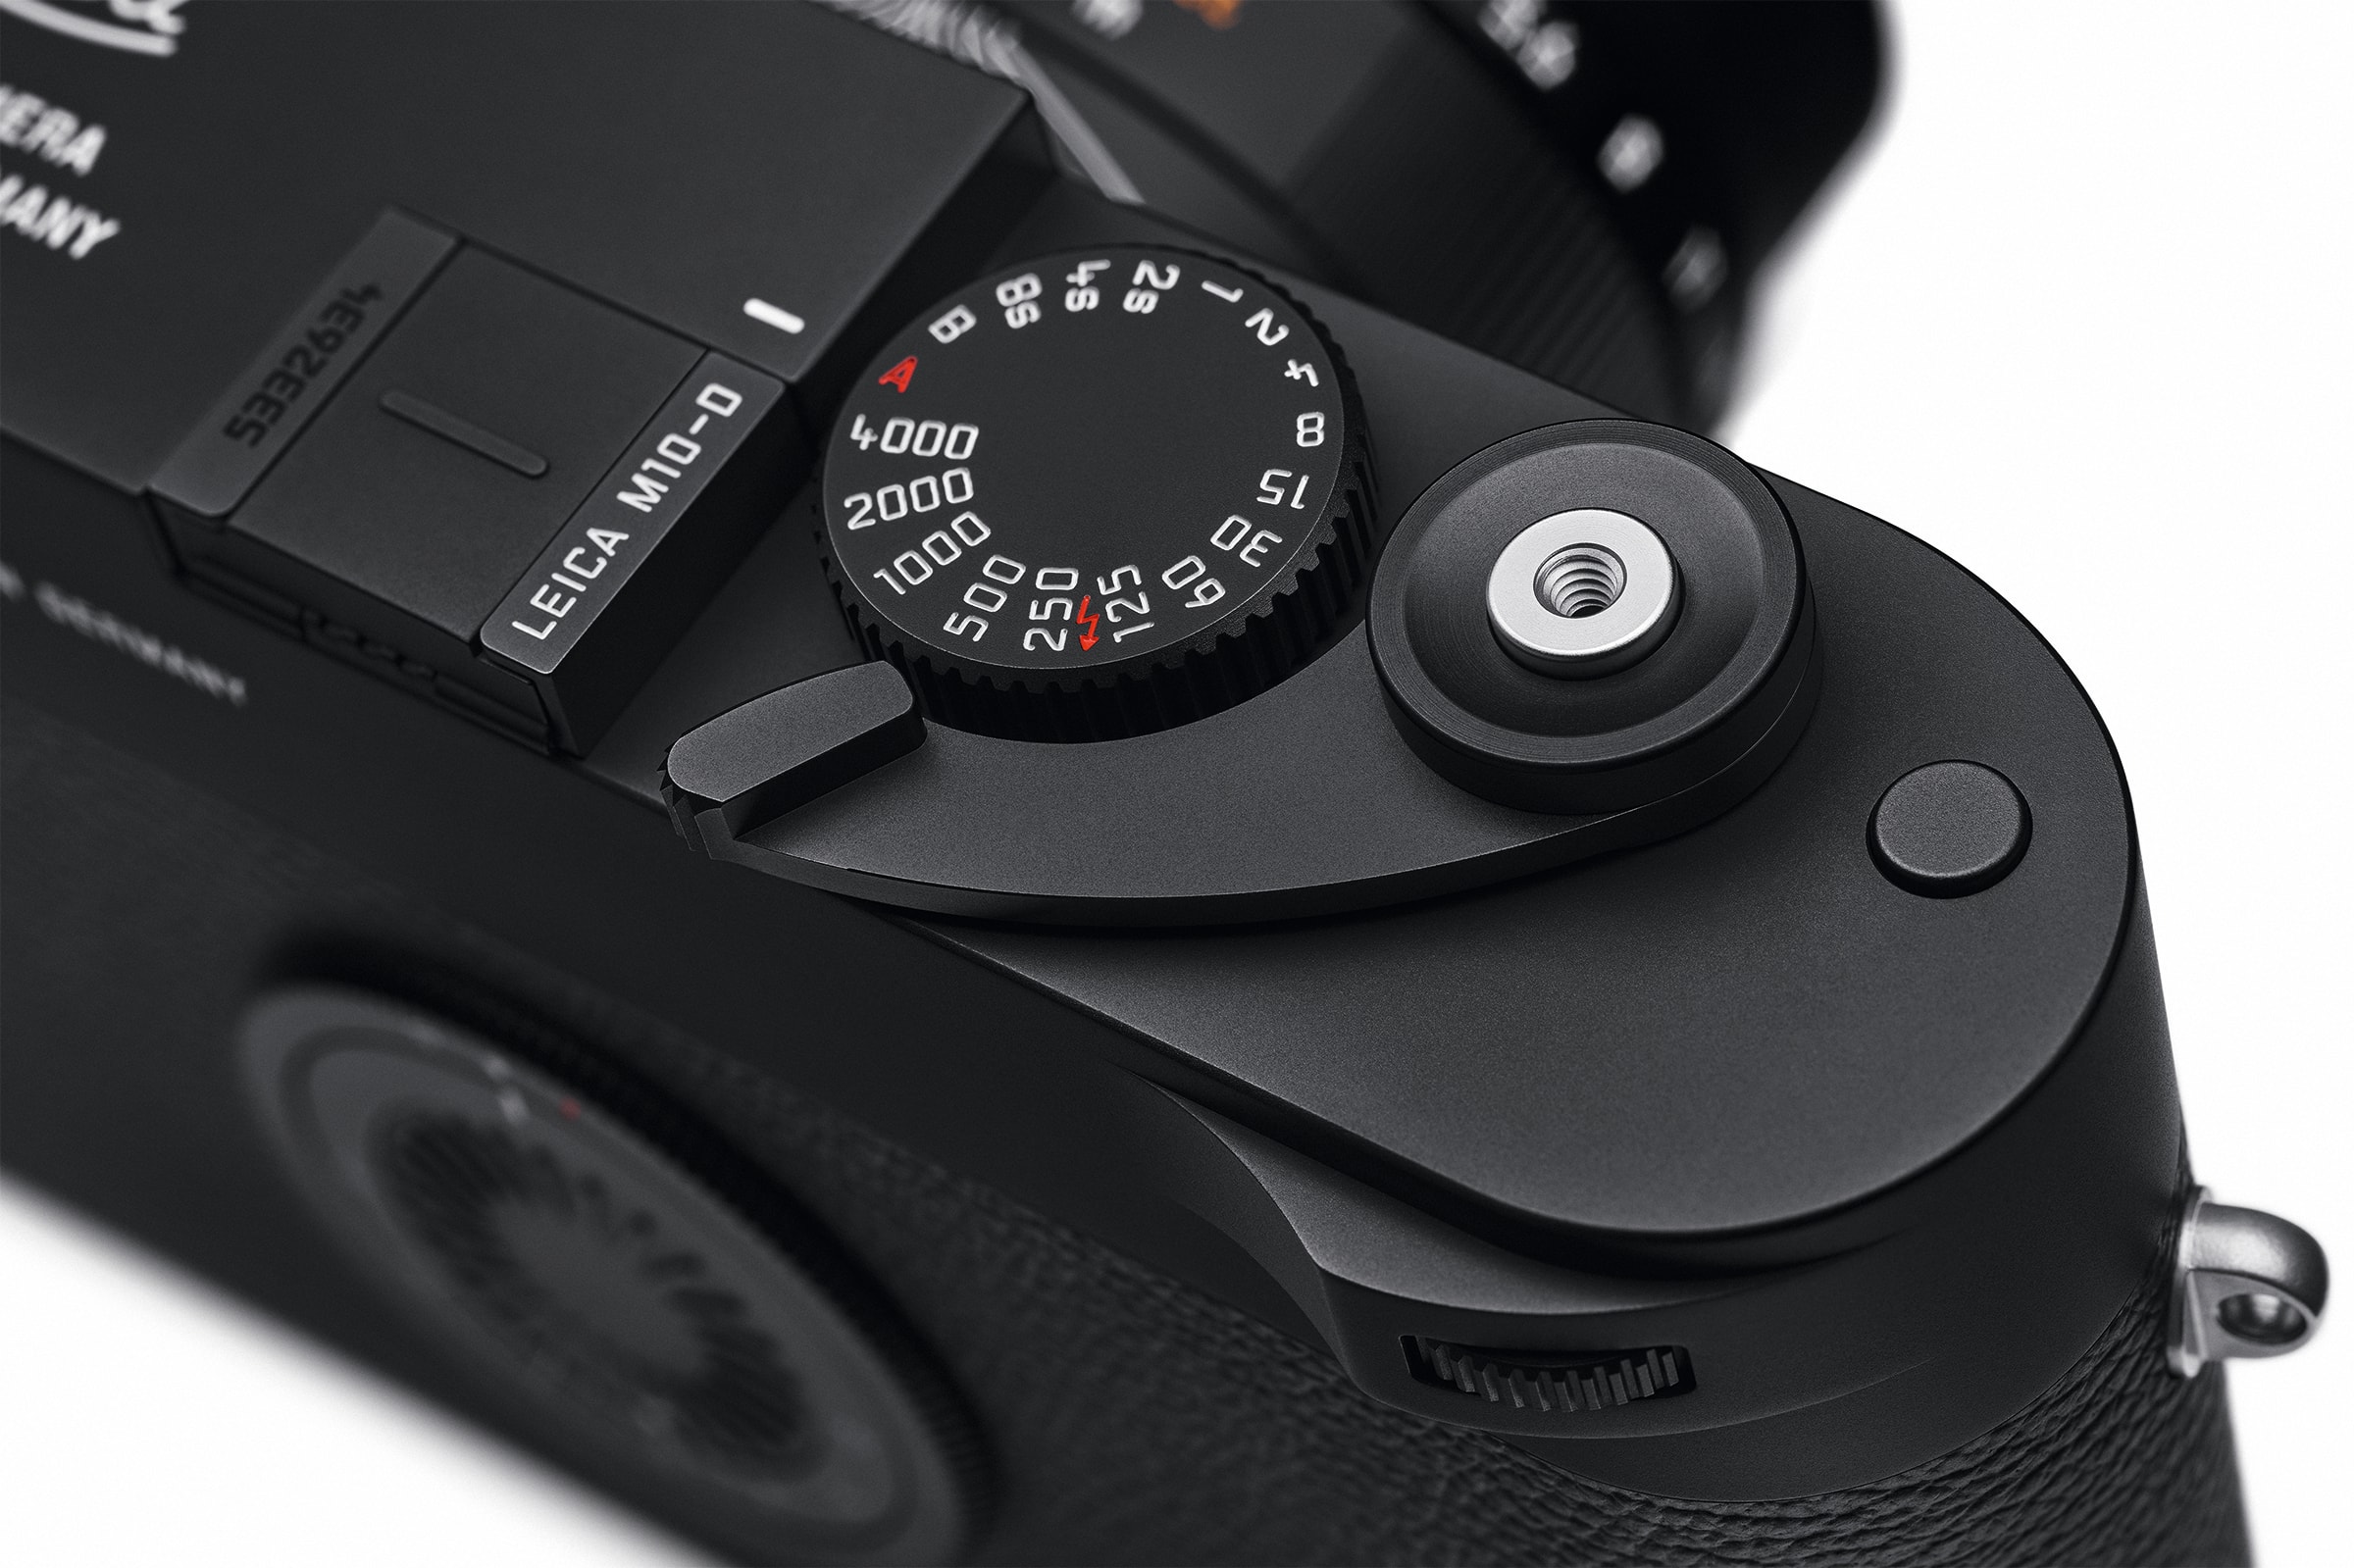 菲林數碼結合－Leica 發佈全新相機 M-10 D